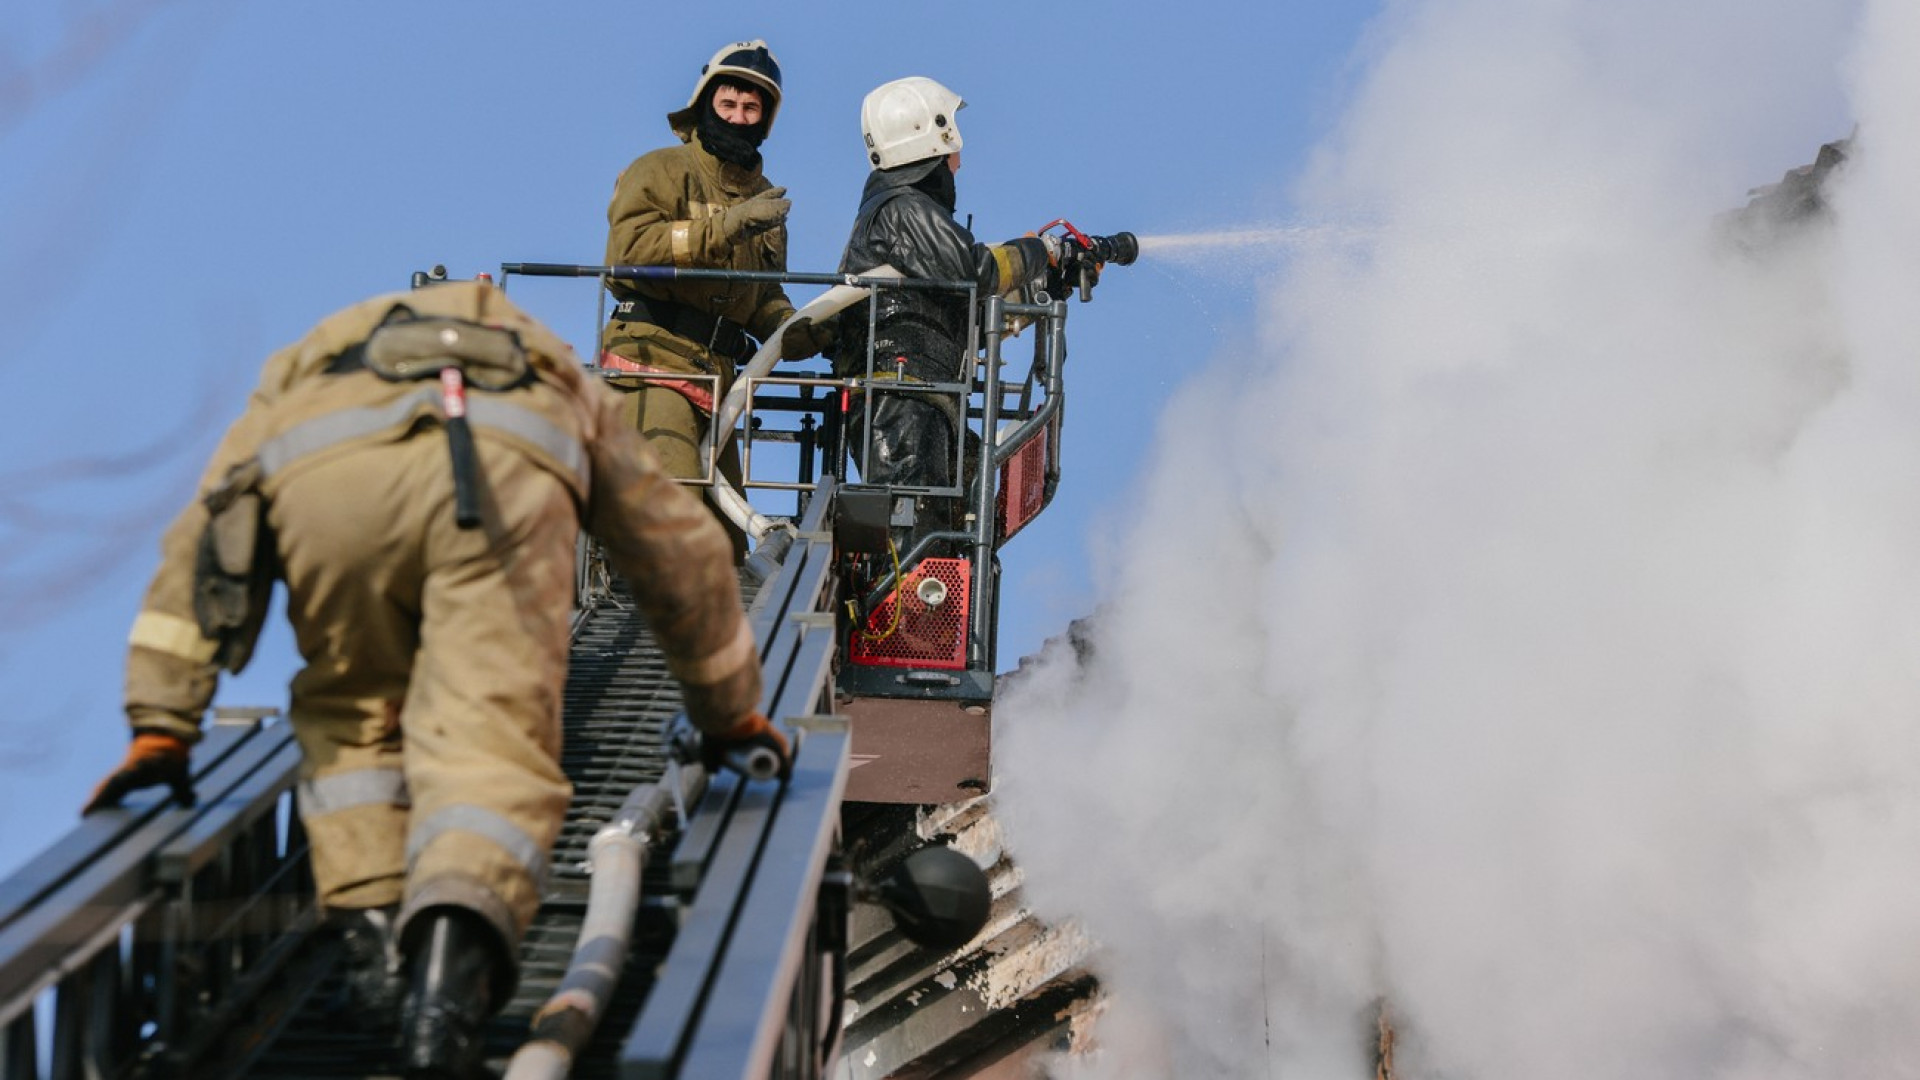 У талдыкорганских предпринимателей вымогают деньги, прикрываясь сотрудниками противопожарных служб